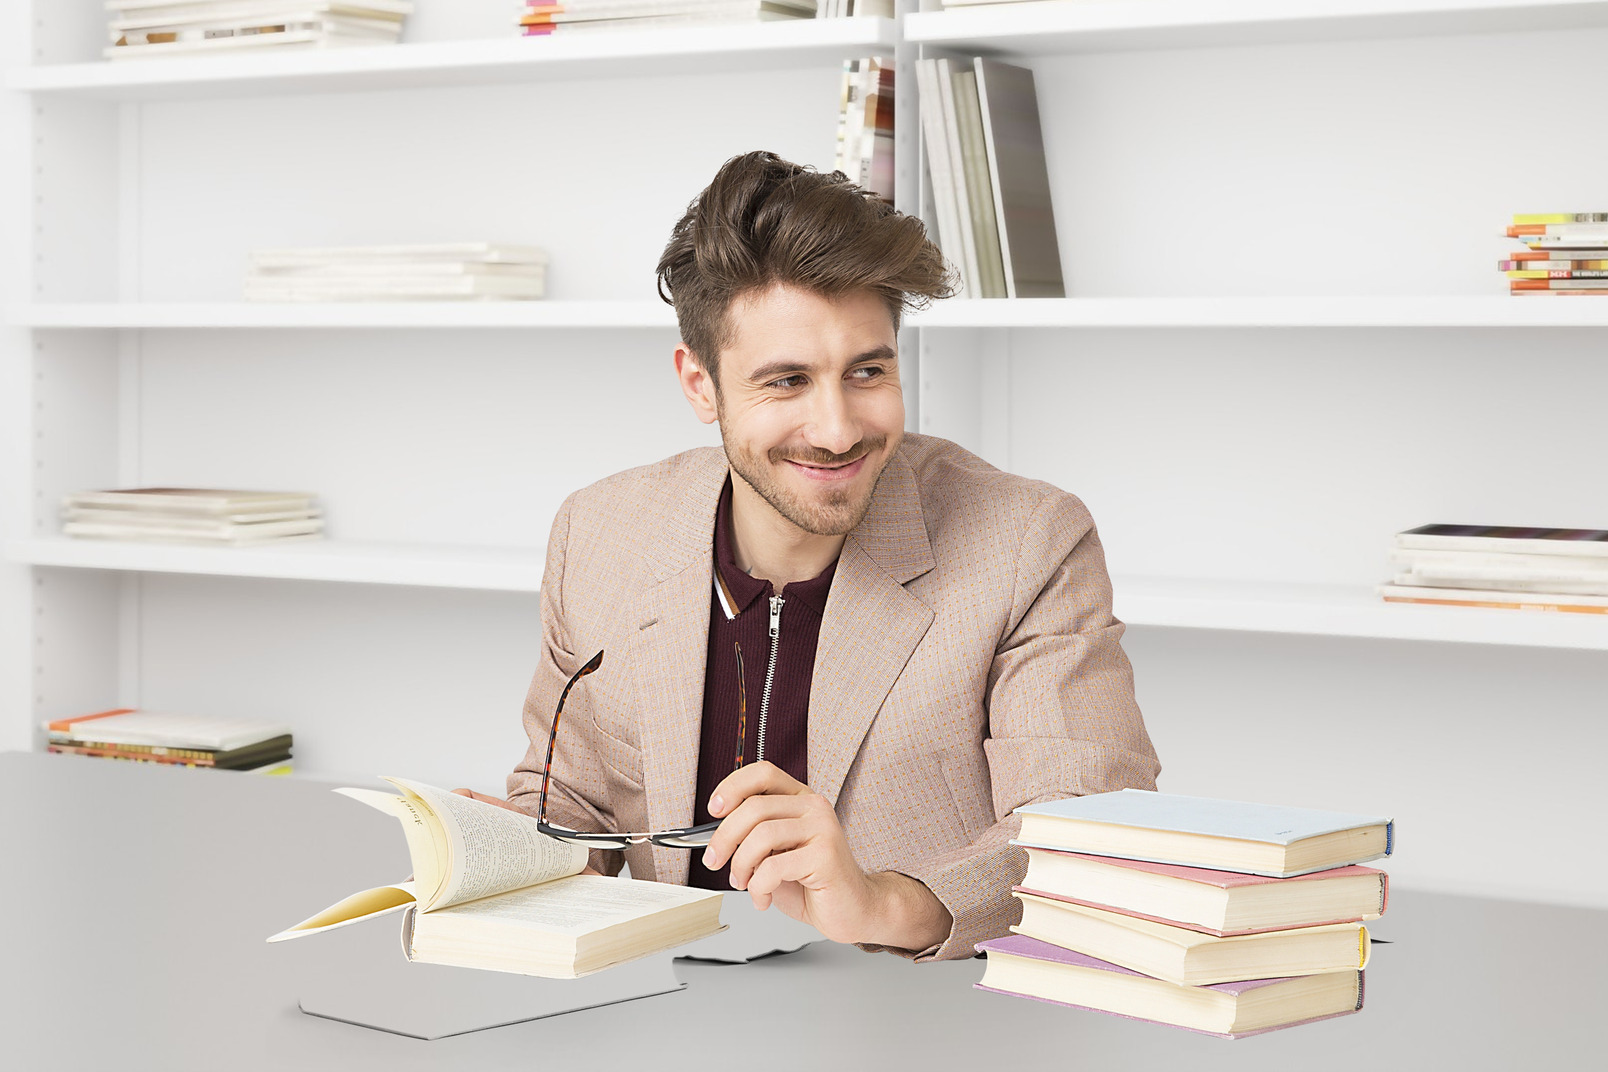 A man in a suit sits at a desk with a stack of books